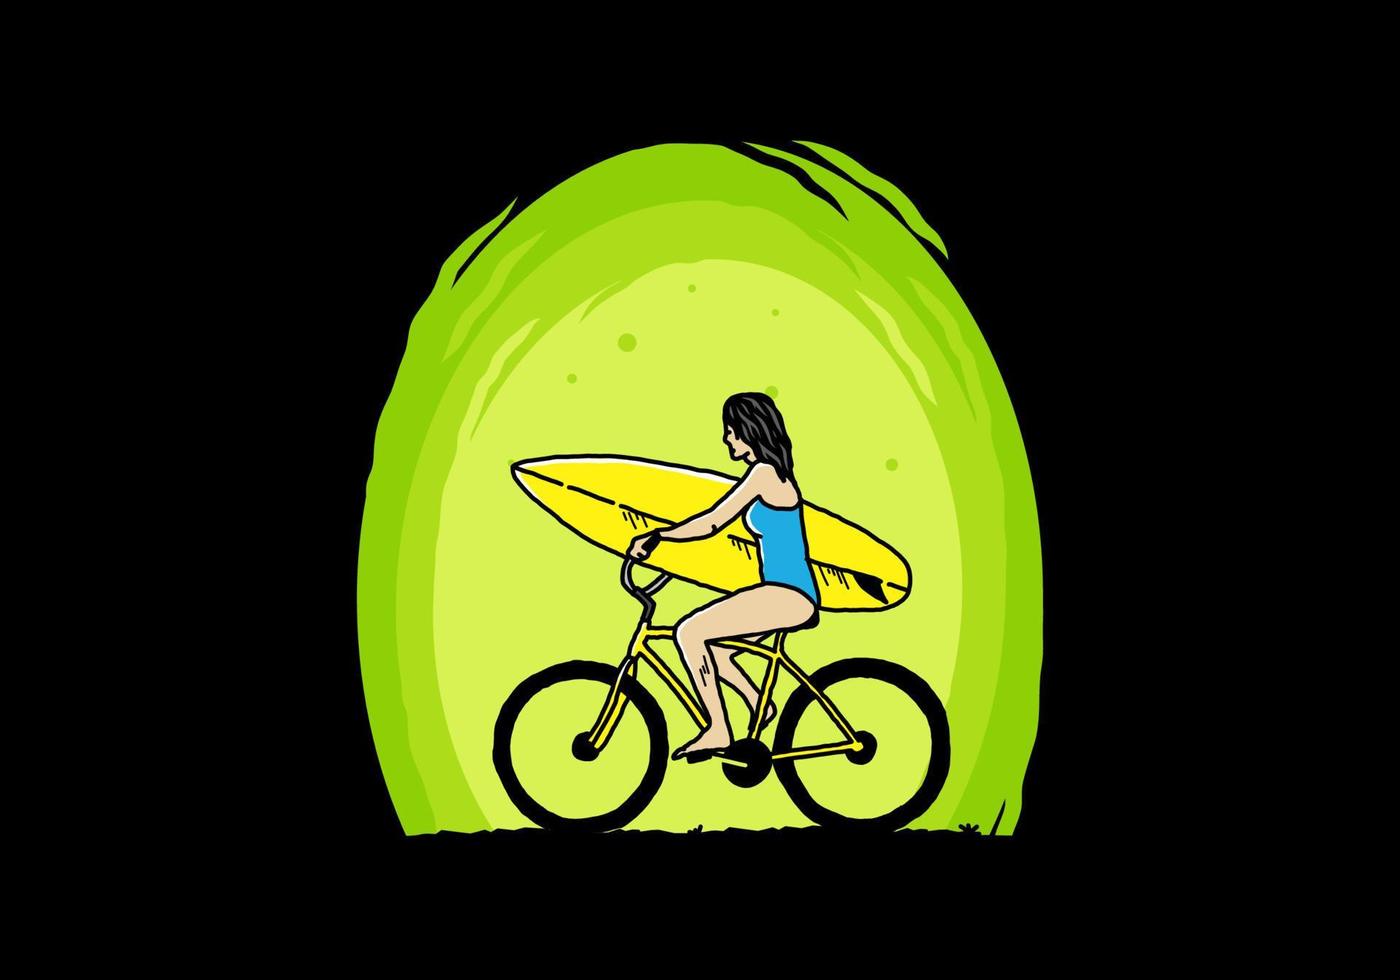 illustration d'une femme faisant du surf à vélo vecteur